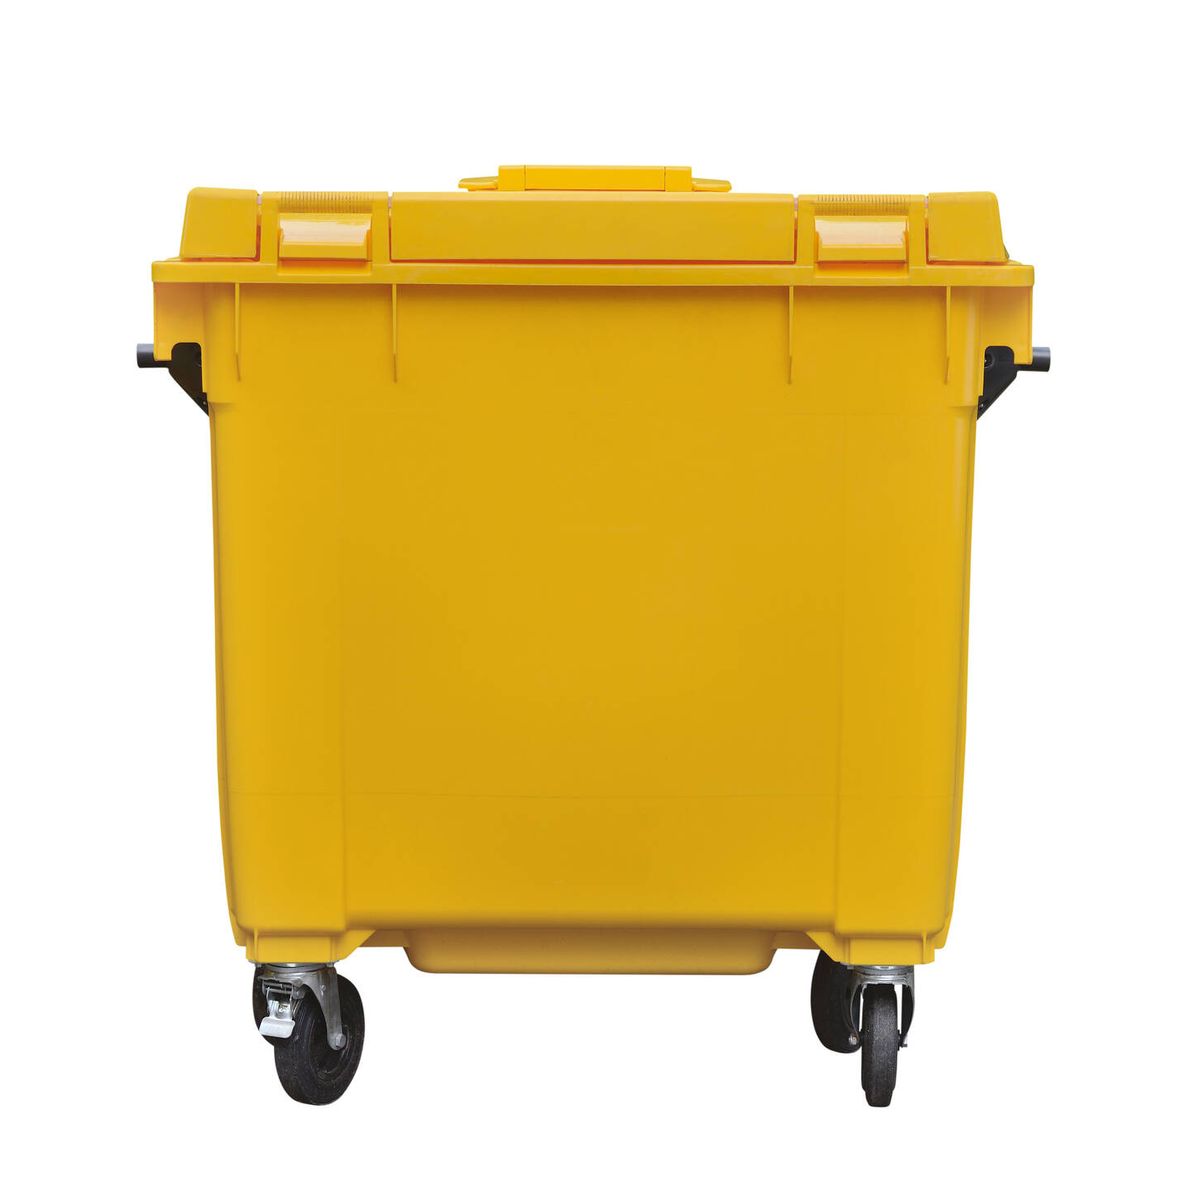 Arco iris cometer Deflector Casi un 30% de todo lo que tiramos al contenedor amarillo en España está  mal depositado